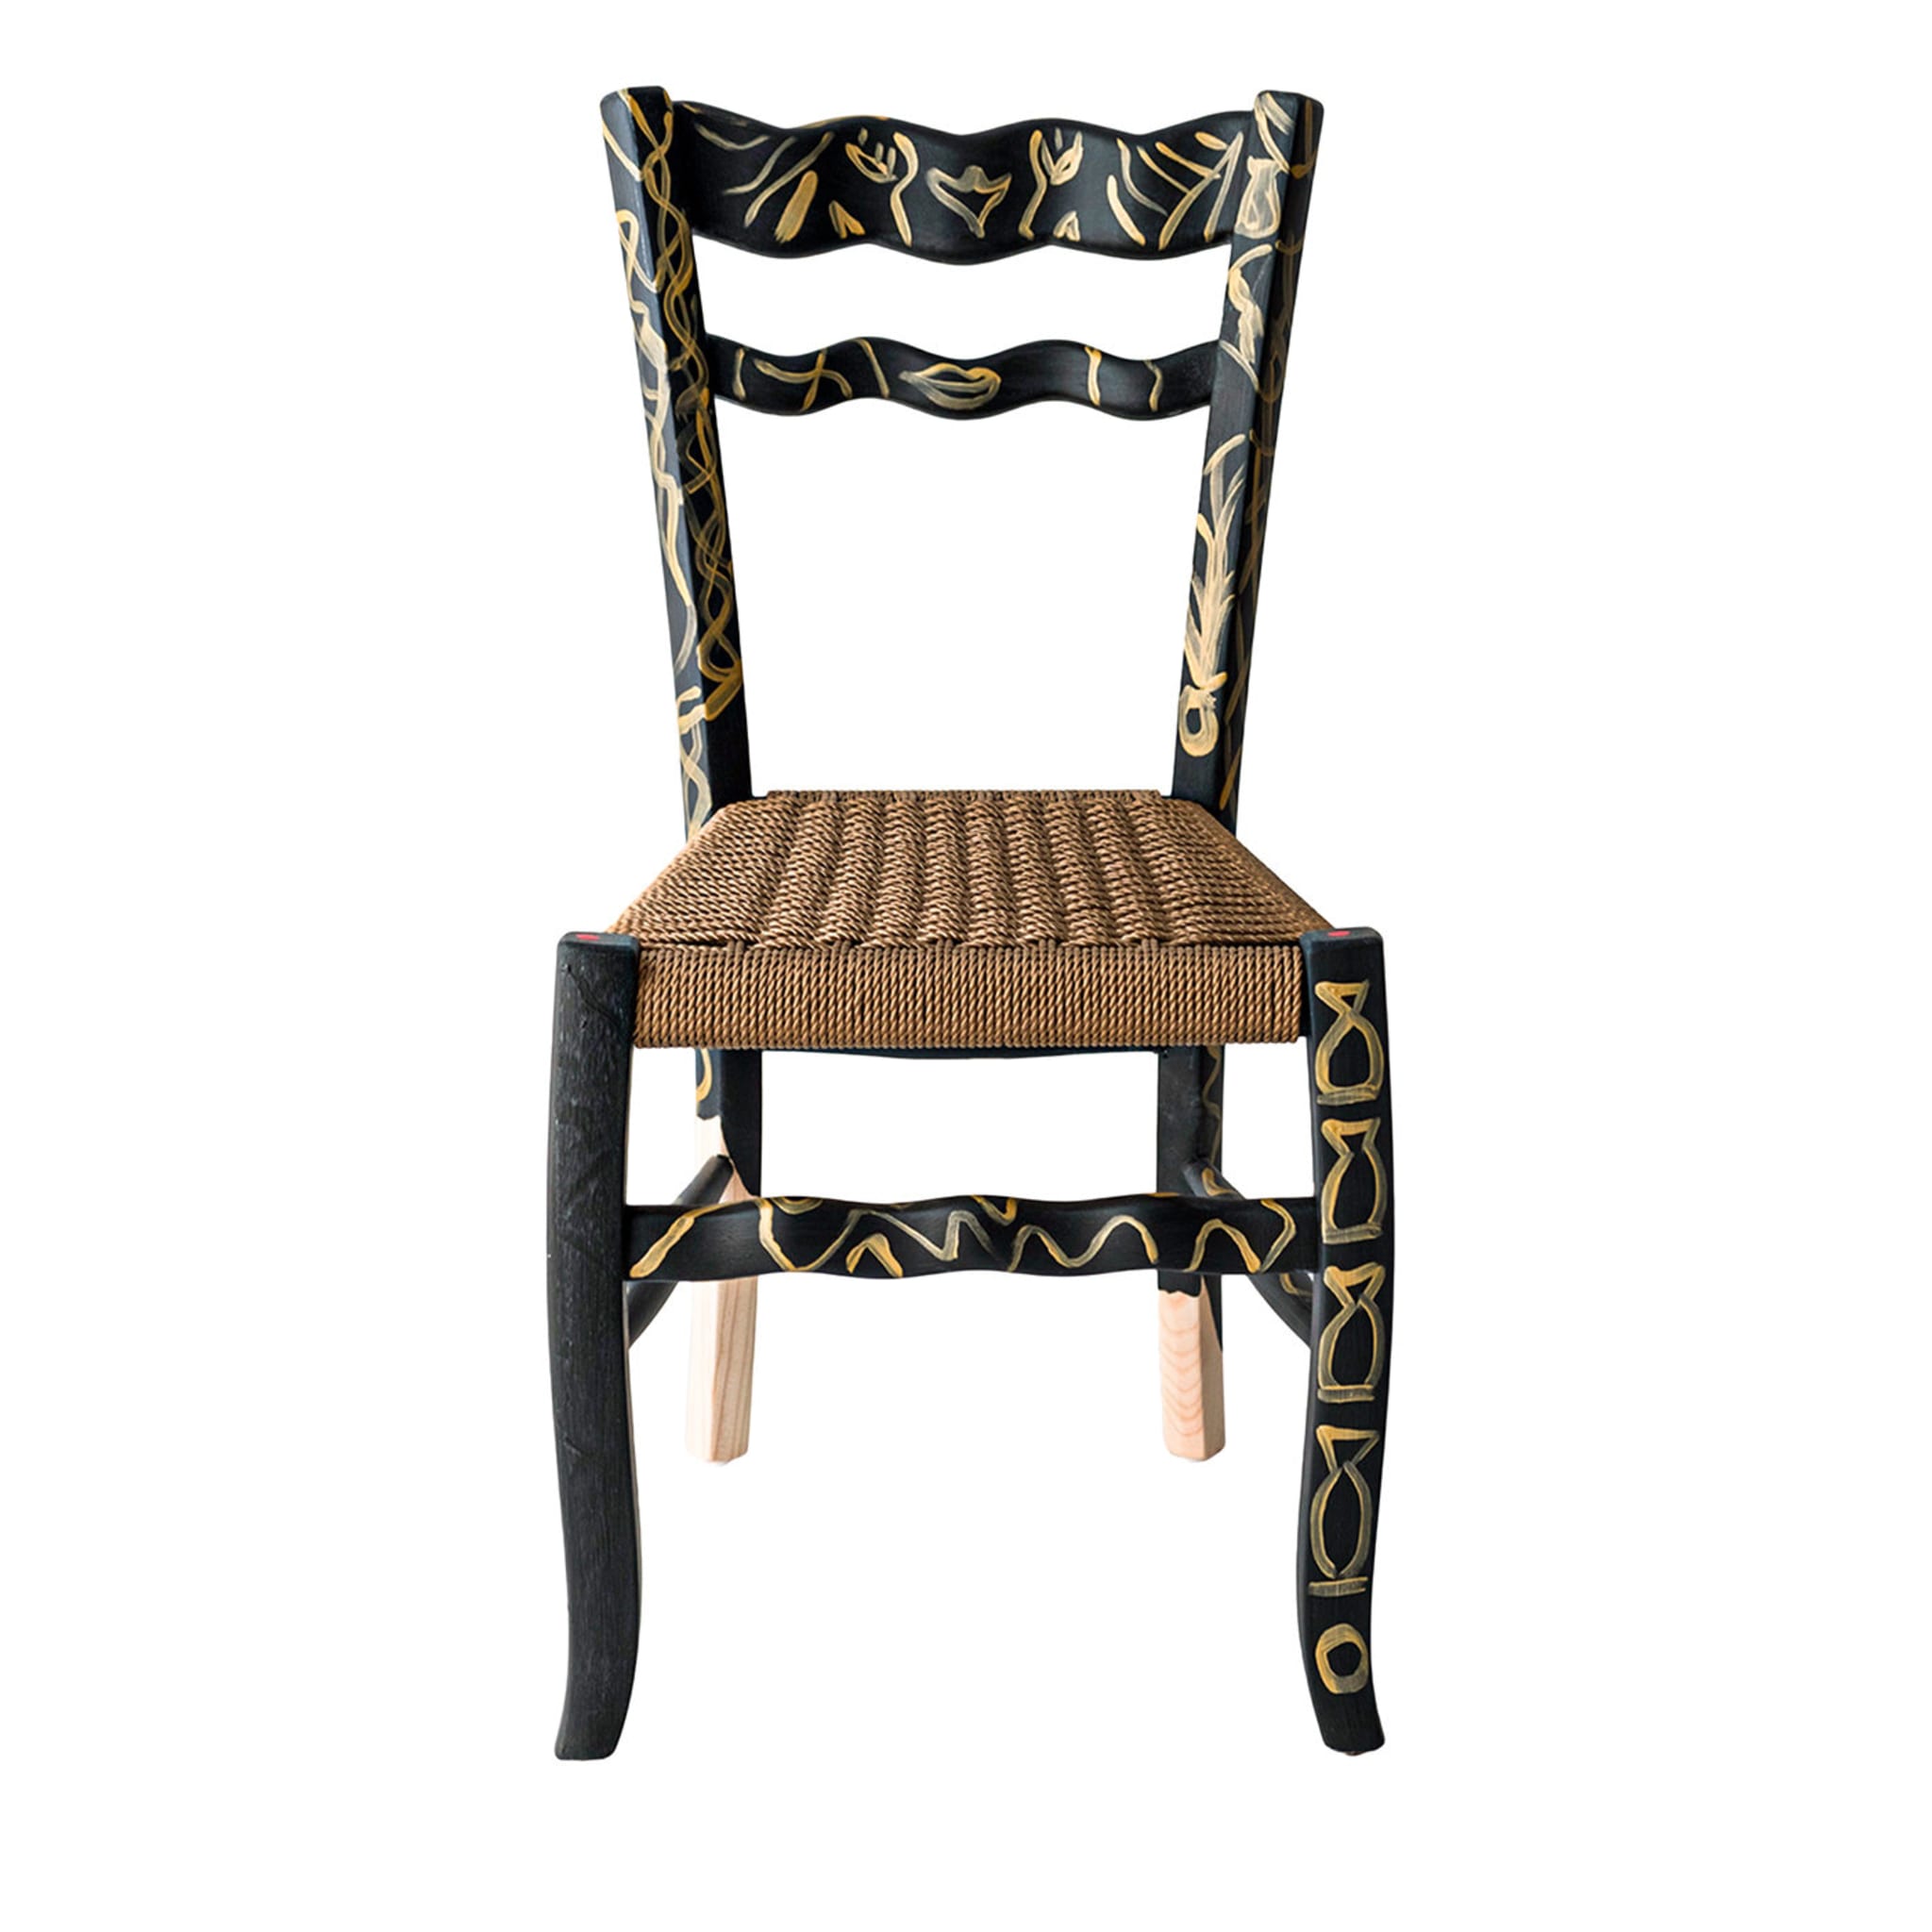 Una silla Signurina Pupara de Antonio Aricò - Vista principal